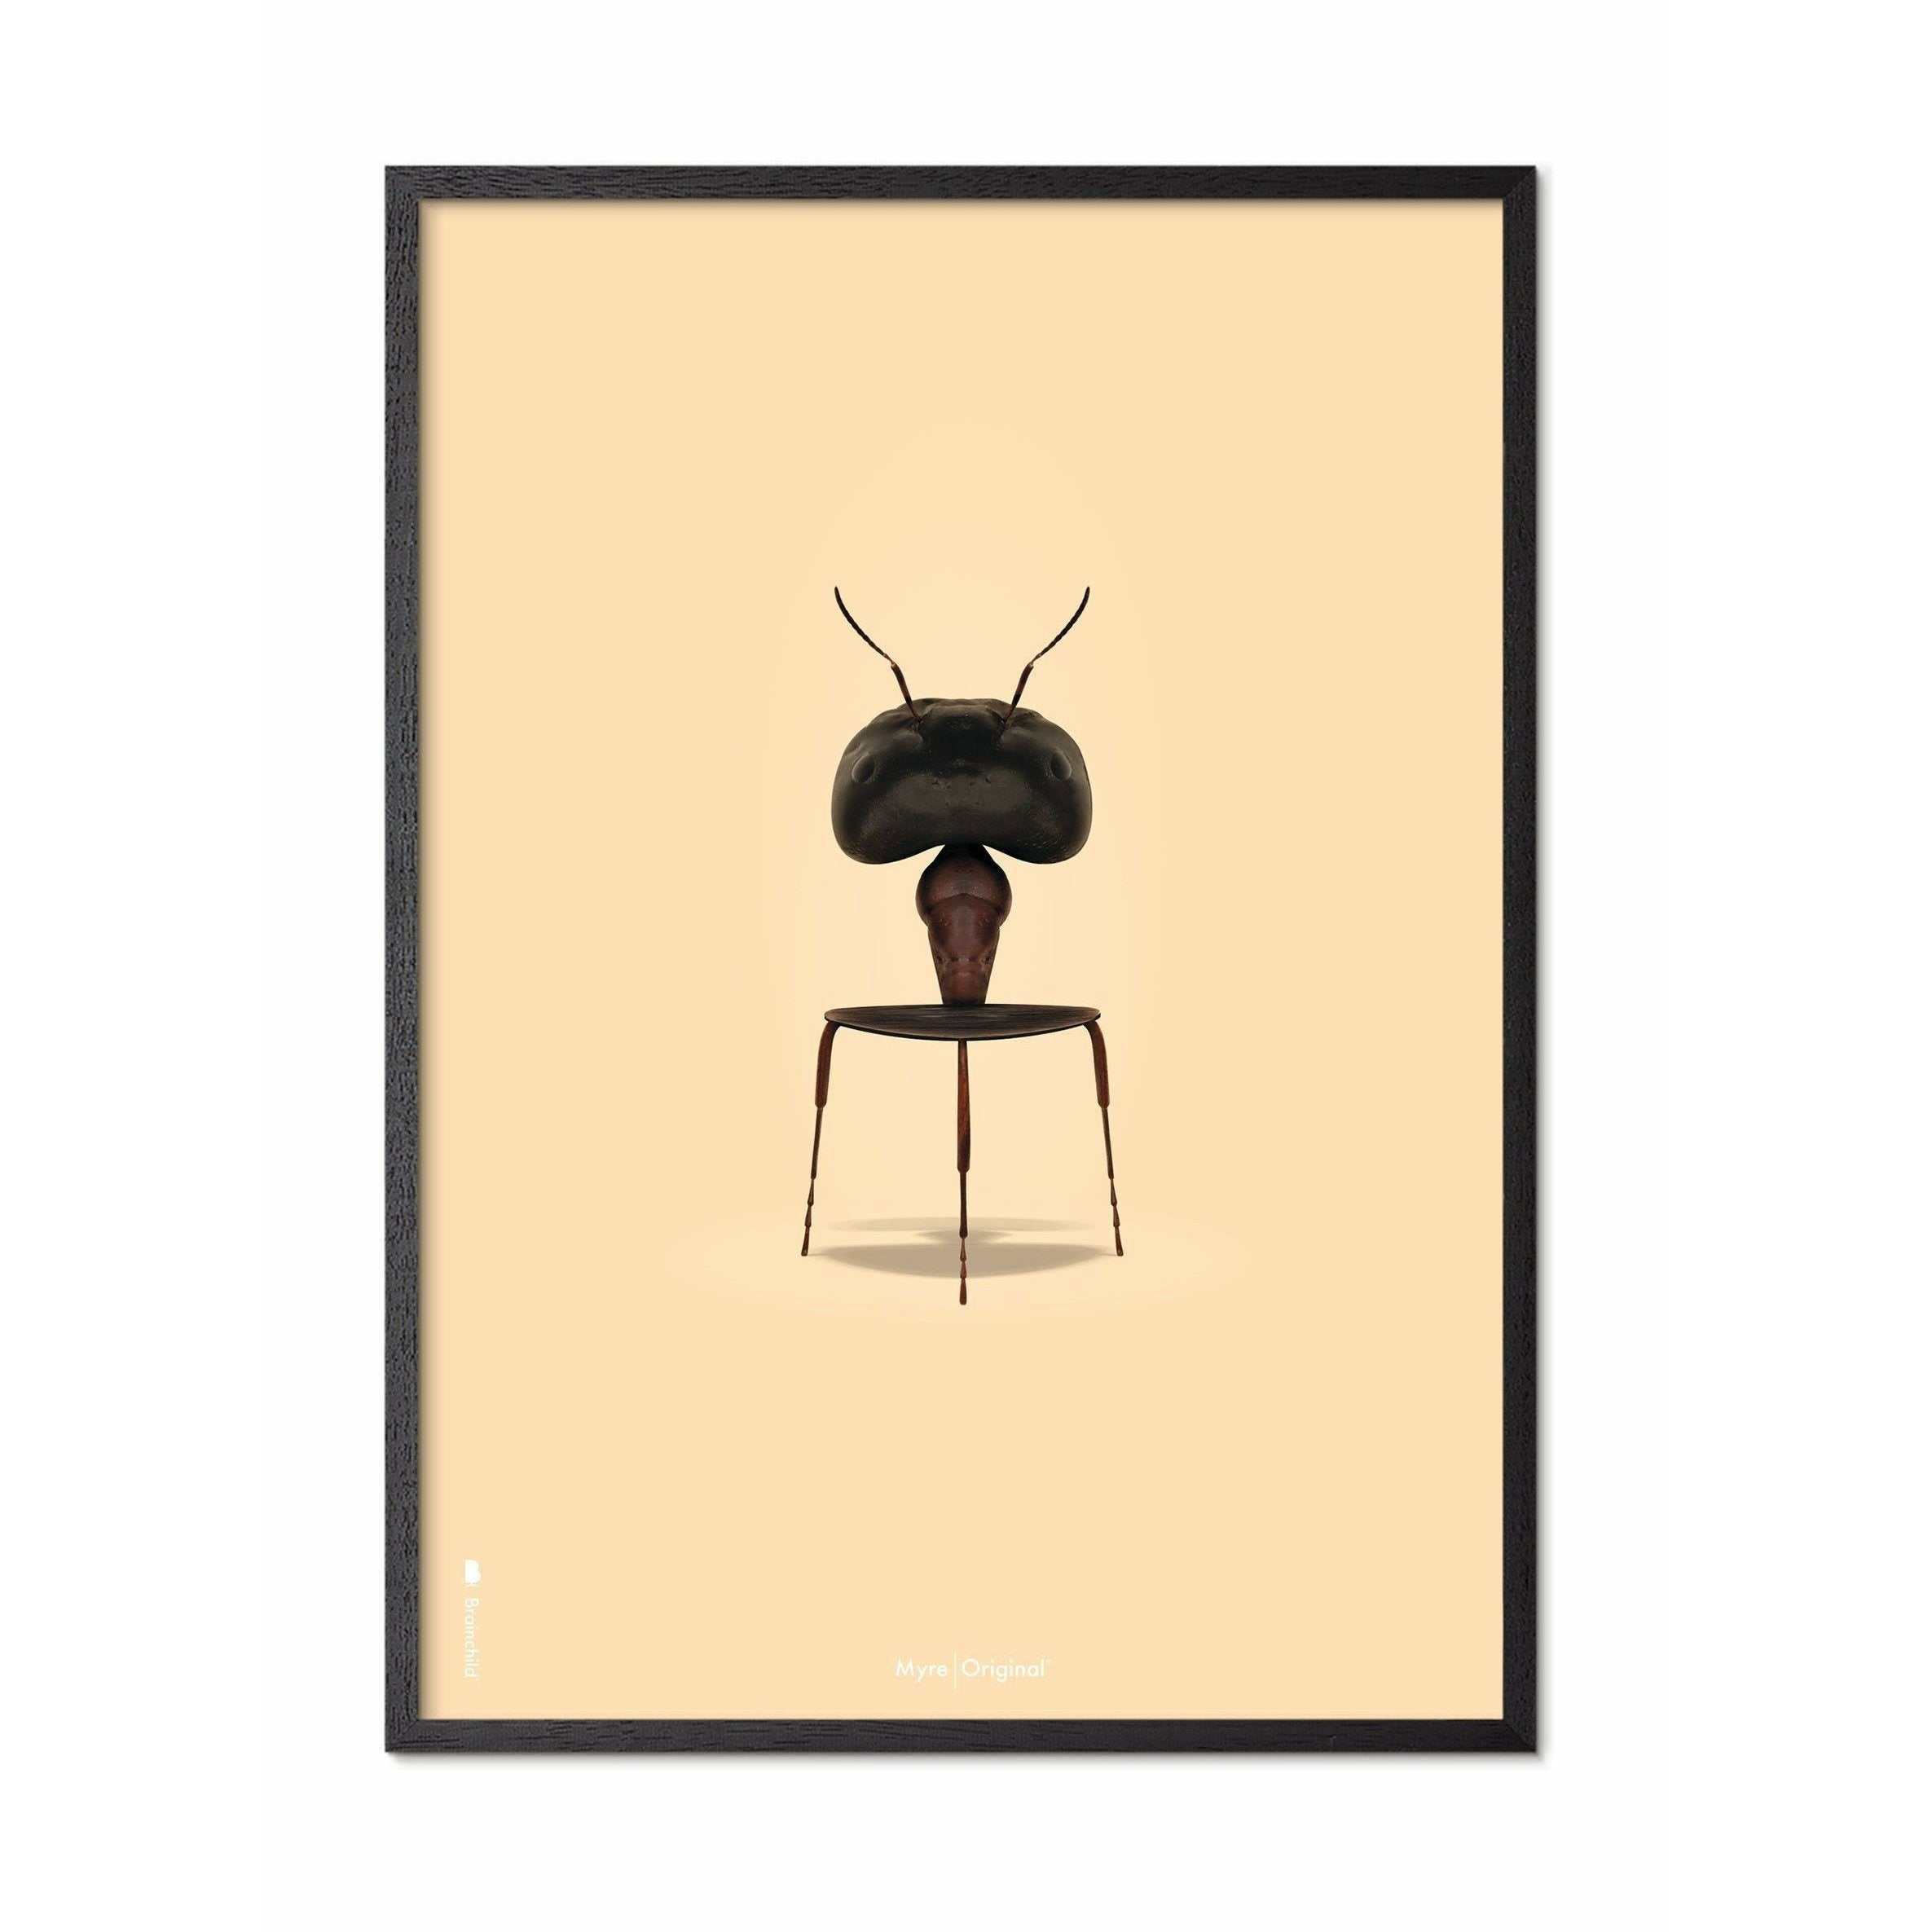 Póster clásico de hormigas de creación, marco en madera lacada negra 50x70 cm, fondo de color arena